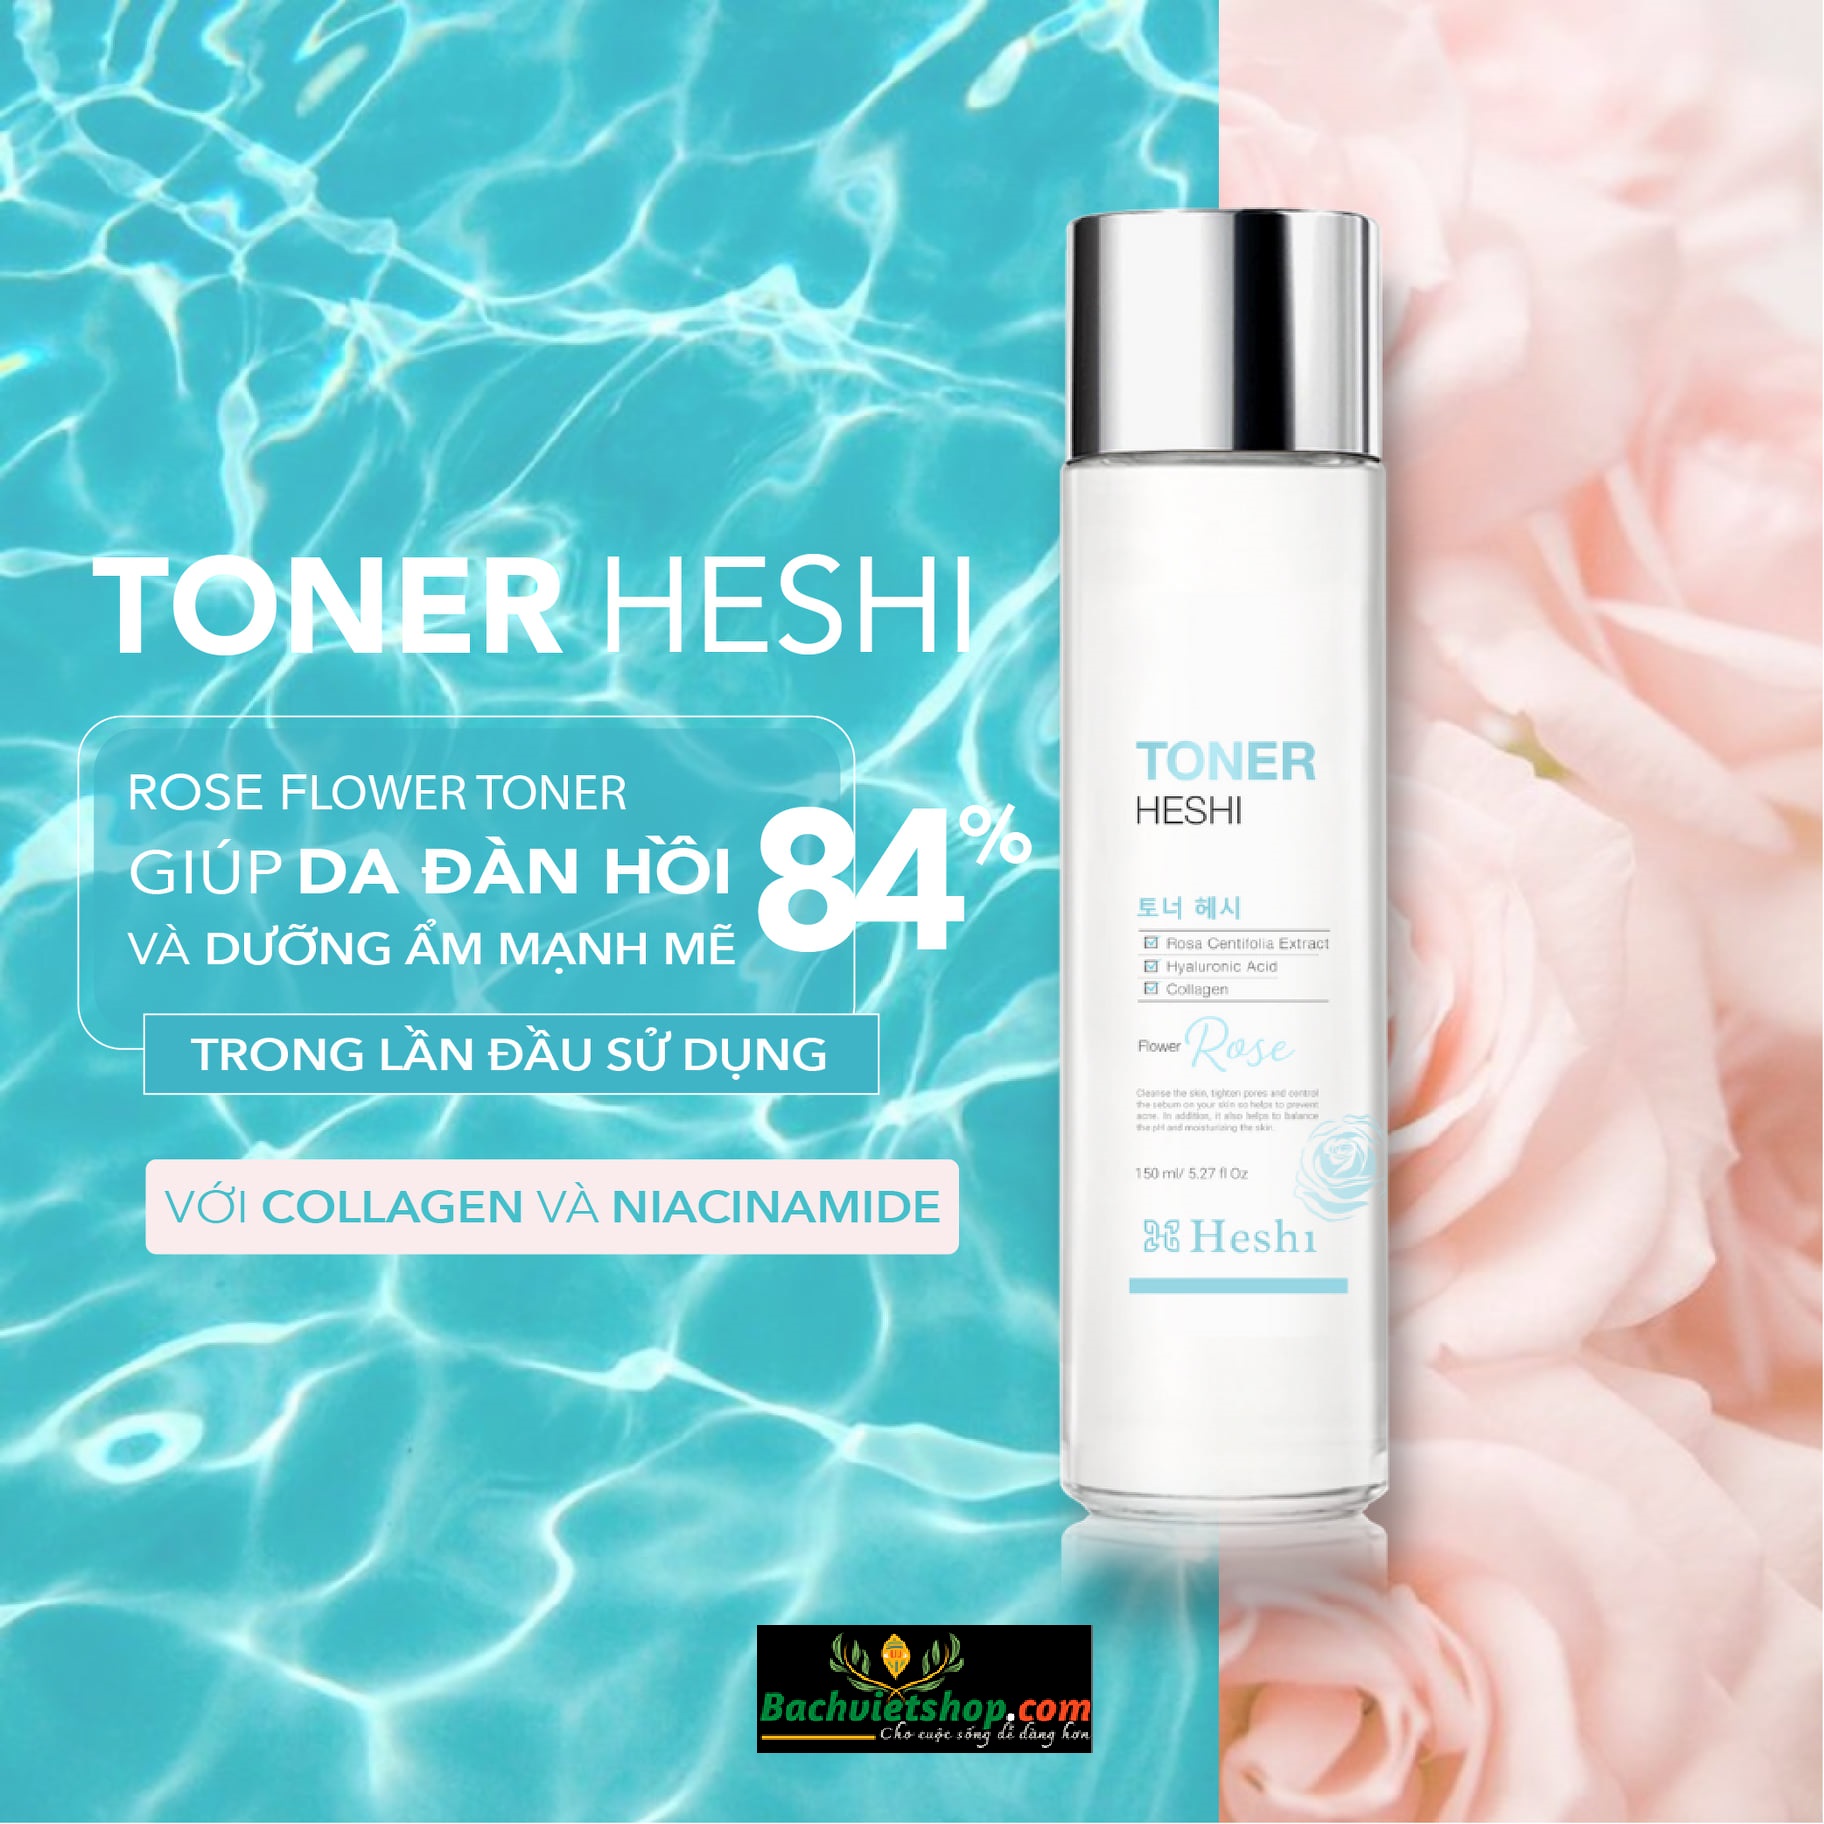 Sử dụng Toner Heshi Flower Rose trong bước skincare giúp làn da nhạy cảm có một độ pH thích hợp, se khít lỗ chân lông & giúp da dày khoẻ!